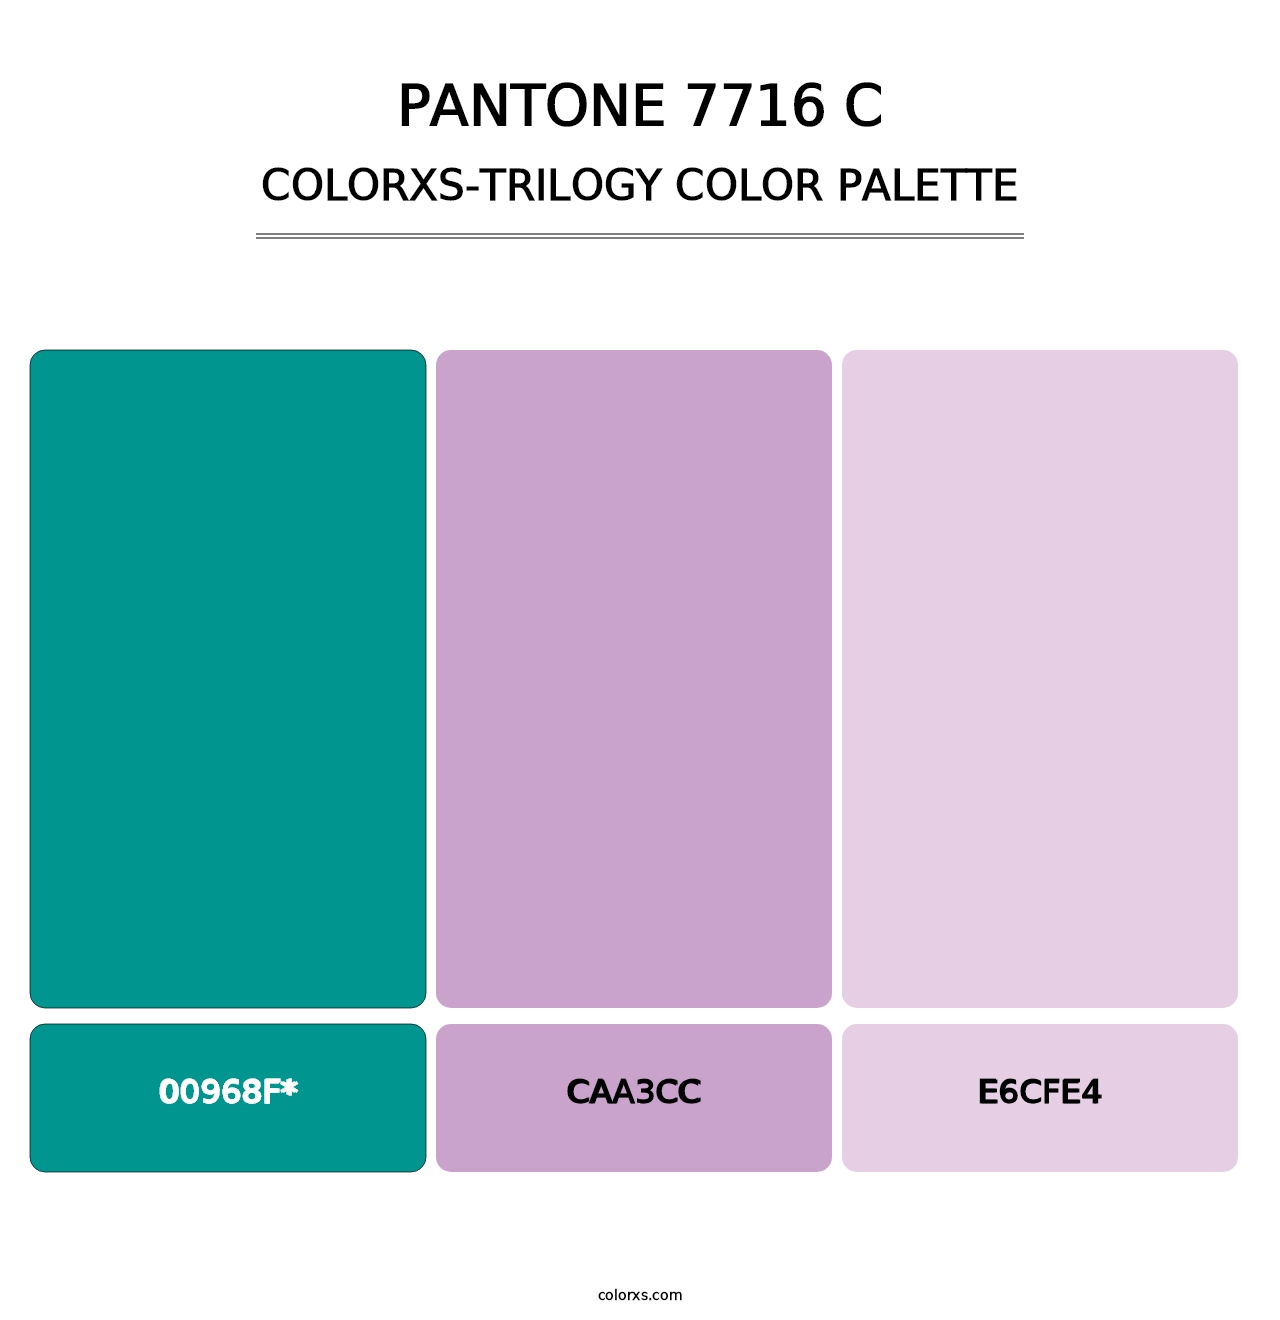 PANTONE 7716 C - Colorxs Trilogy Palette